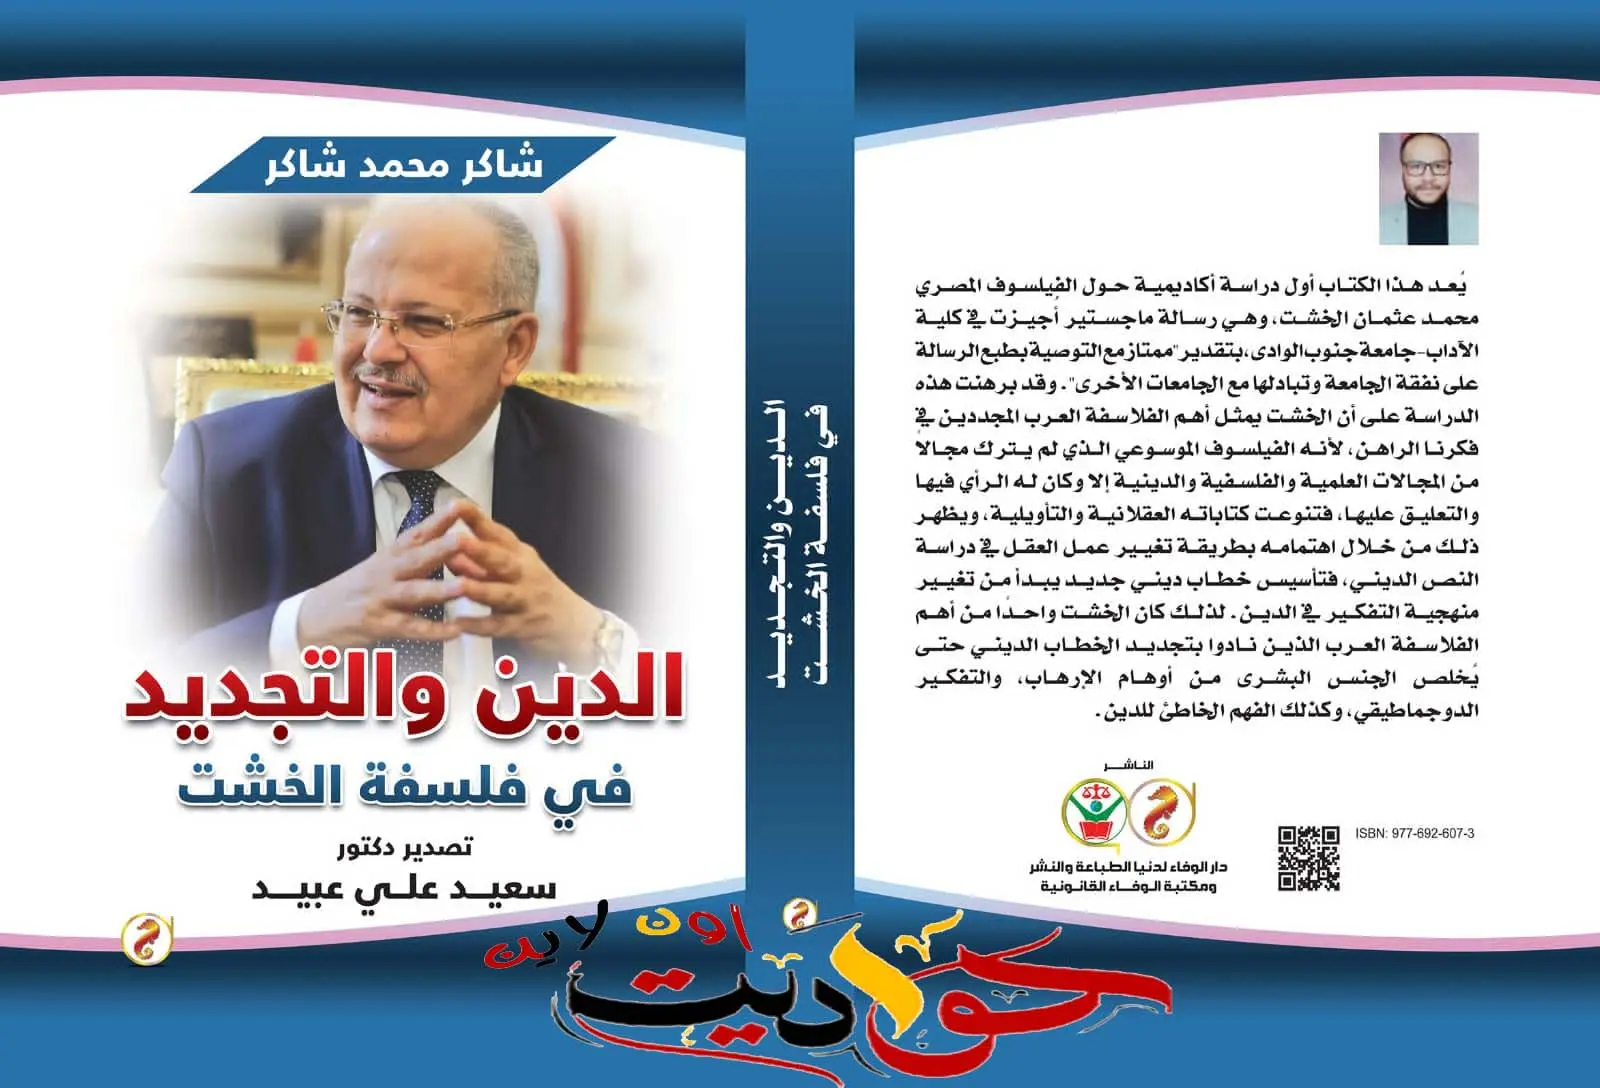 صدور كتاب جديد بعنوان "الدين والتجديد في فلسفة الخشت" يناقش رؤي رئيس جامعة القاهرة في الخطاب الديني الجديد